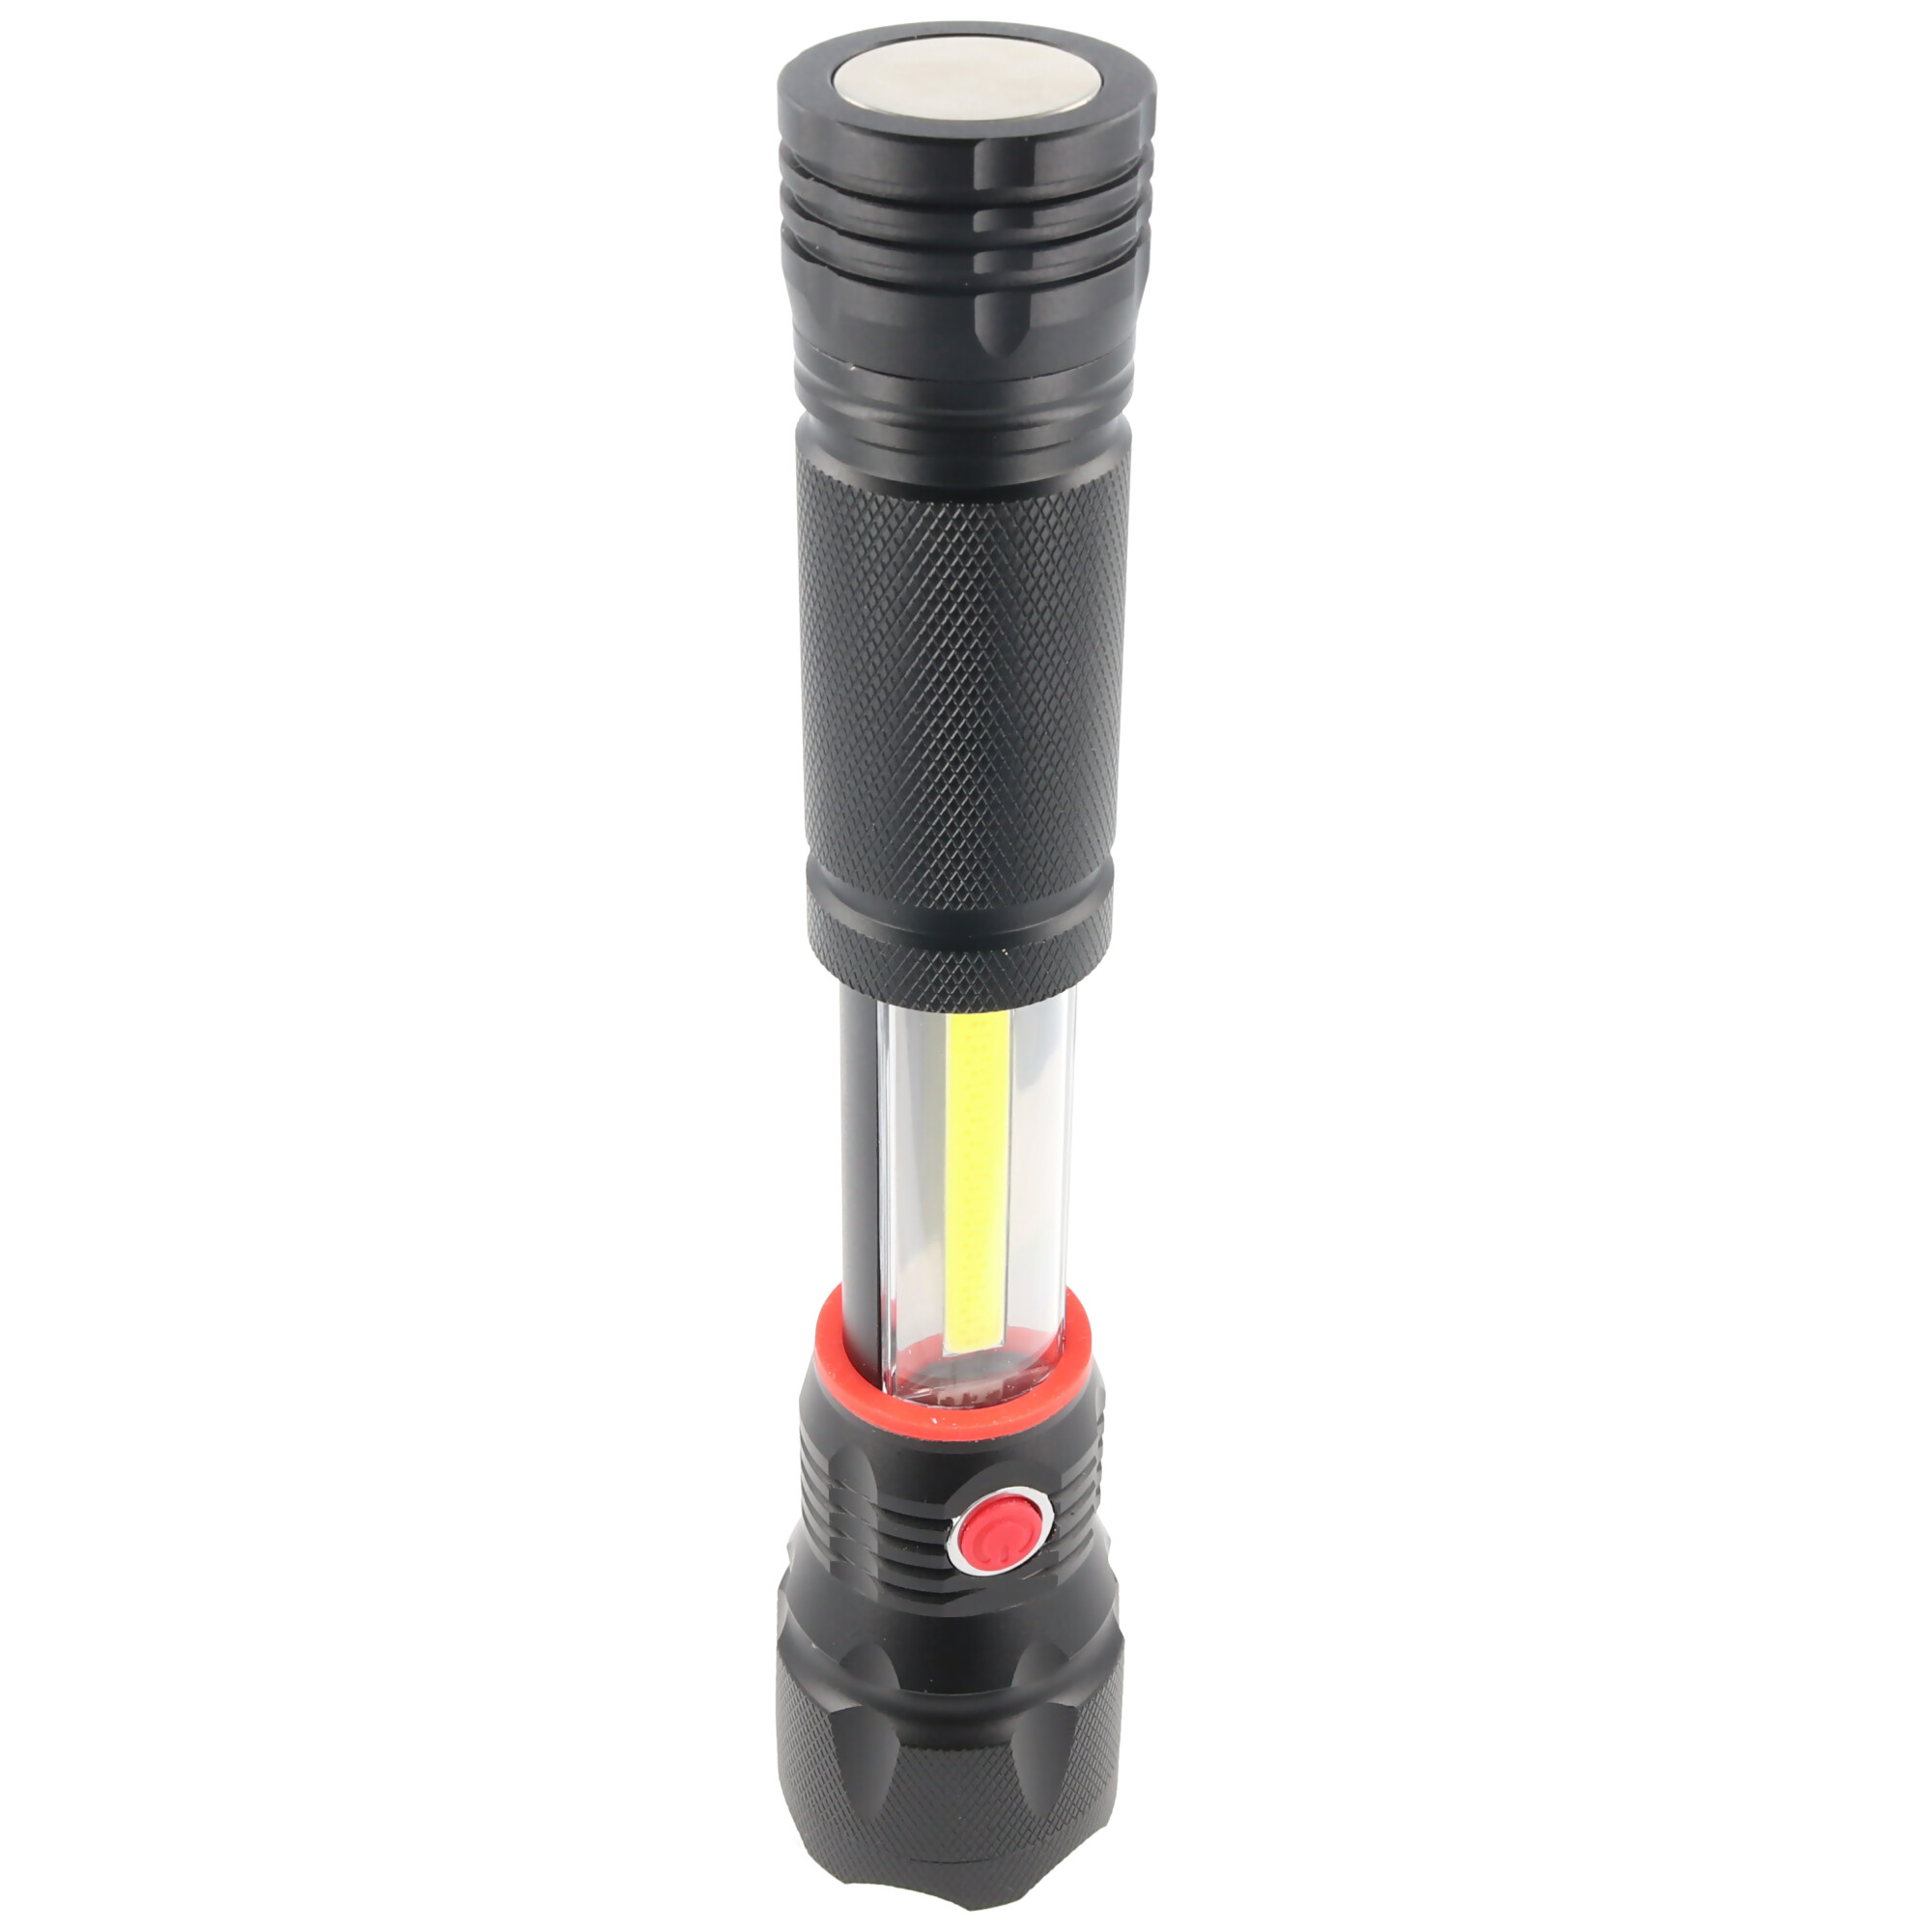 3in1 LED Leuchte im schwarzem Aluminiumgehäuse und extra starkem Magnet